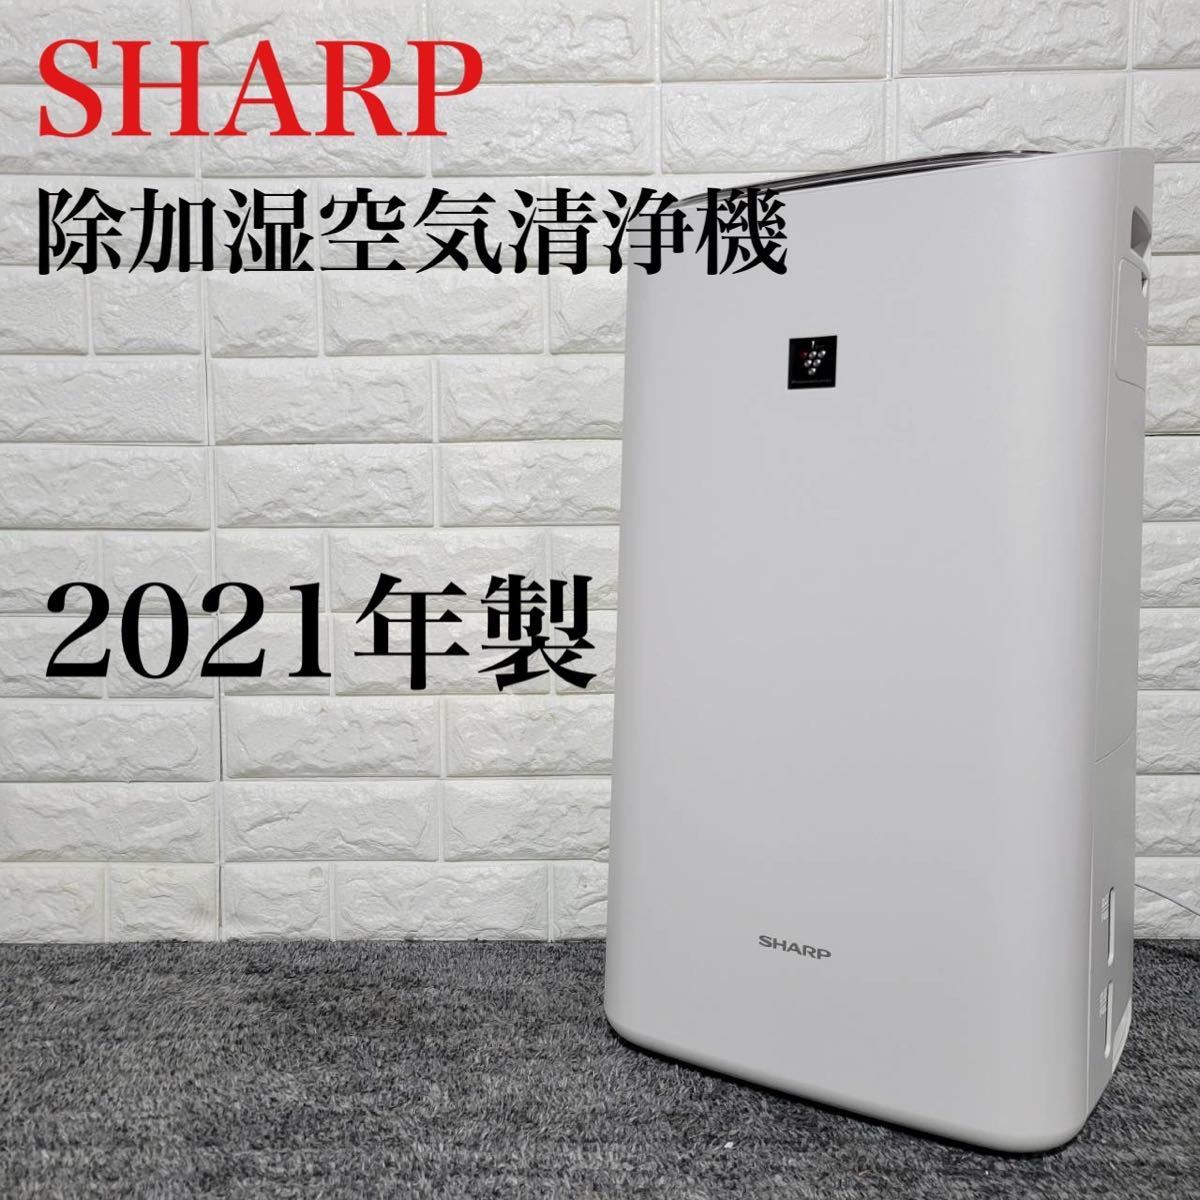 Yahoo!オークション - SHARP 除加湿空気清浄機 KI-LD50-W 2021...